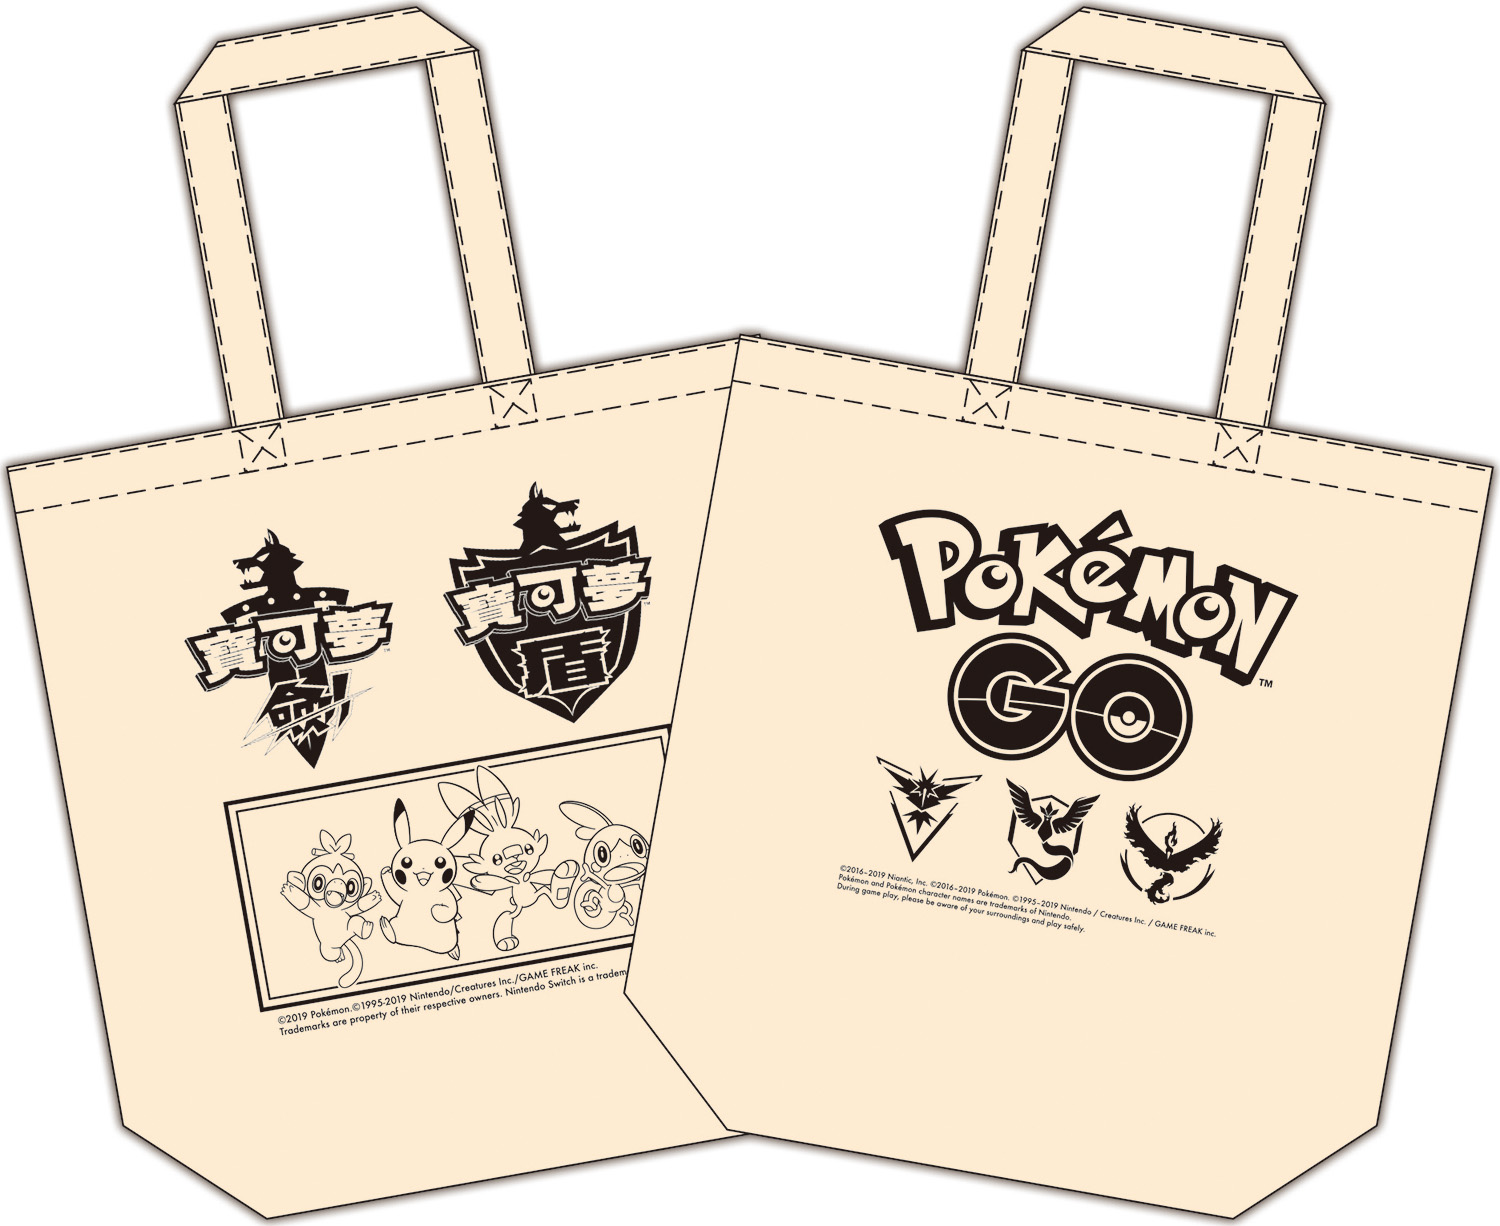 完成指定任務即可獲得限量Pokémon GO Eco bag